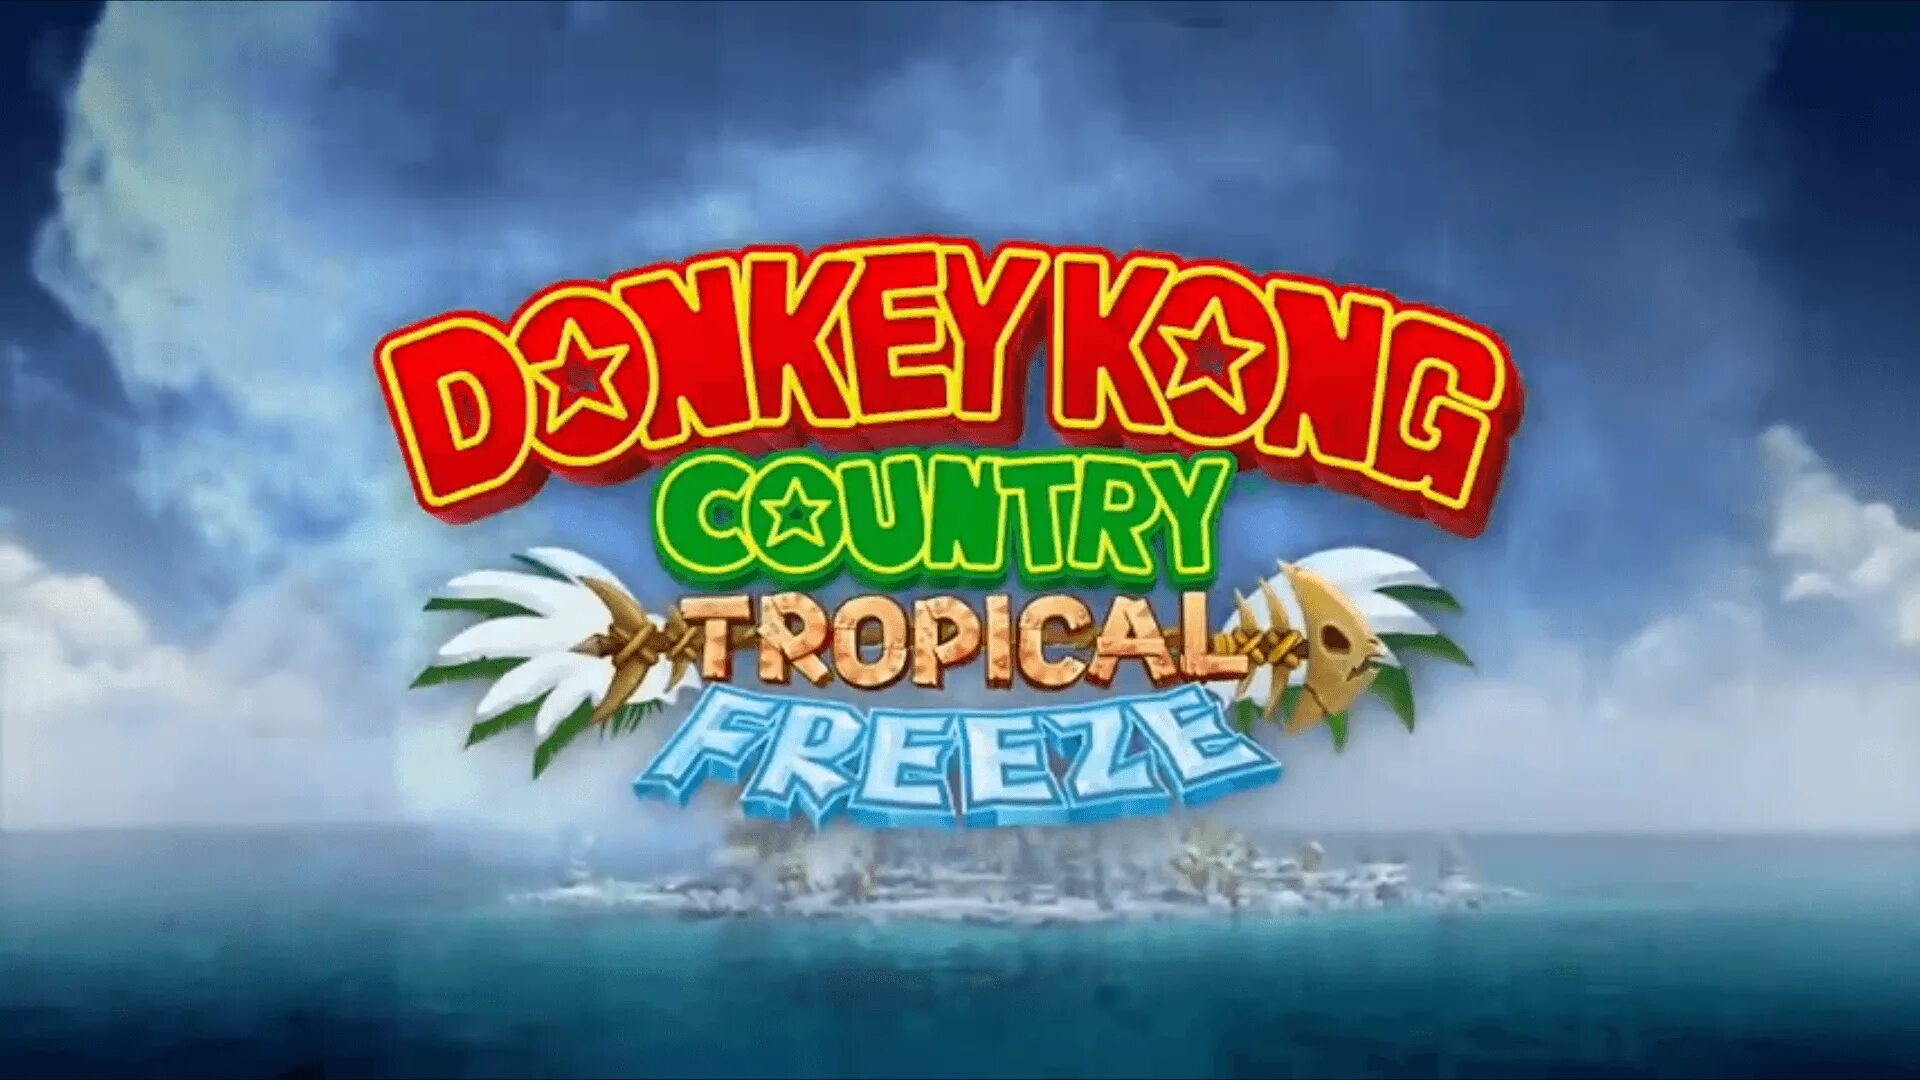 Donkey kong country freeze. Donkey Kong Country: Tropical Freeze. Donkey Kong Country: Tropical Freeze логотип. Donkey Kong Country Tropical Freeze обложка. Donkey Kong Country Tropical Freeze вагонетки.